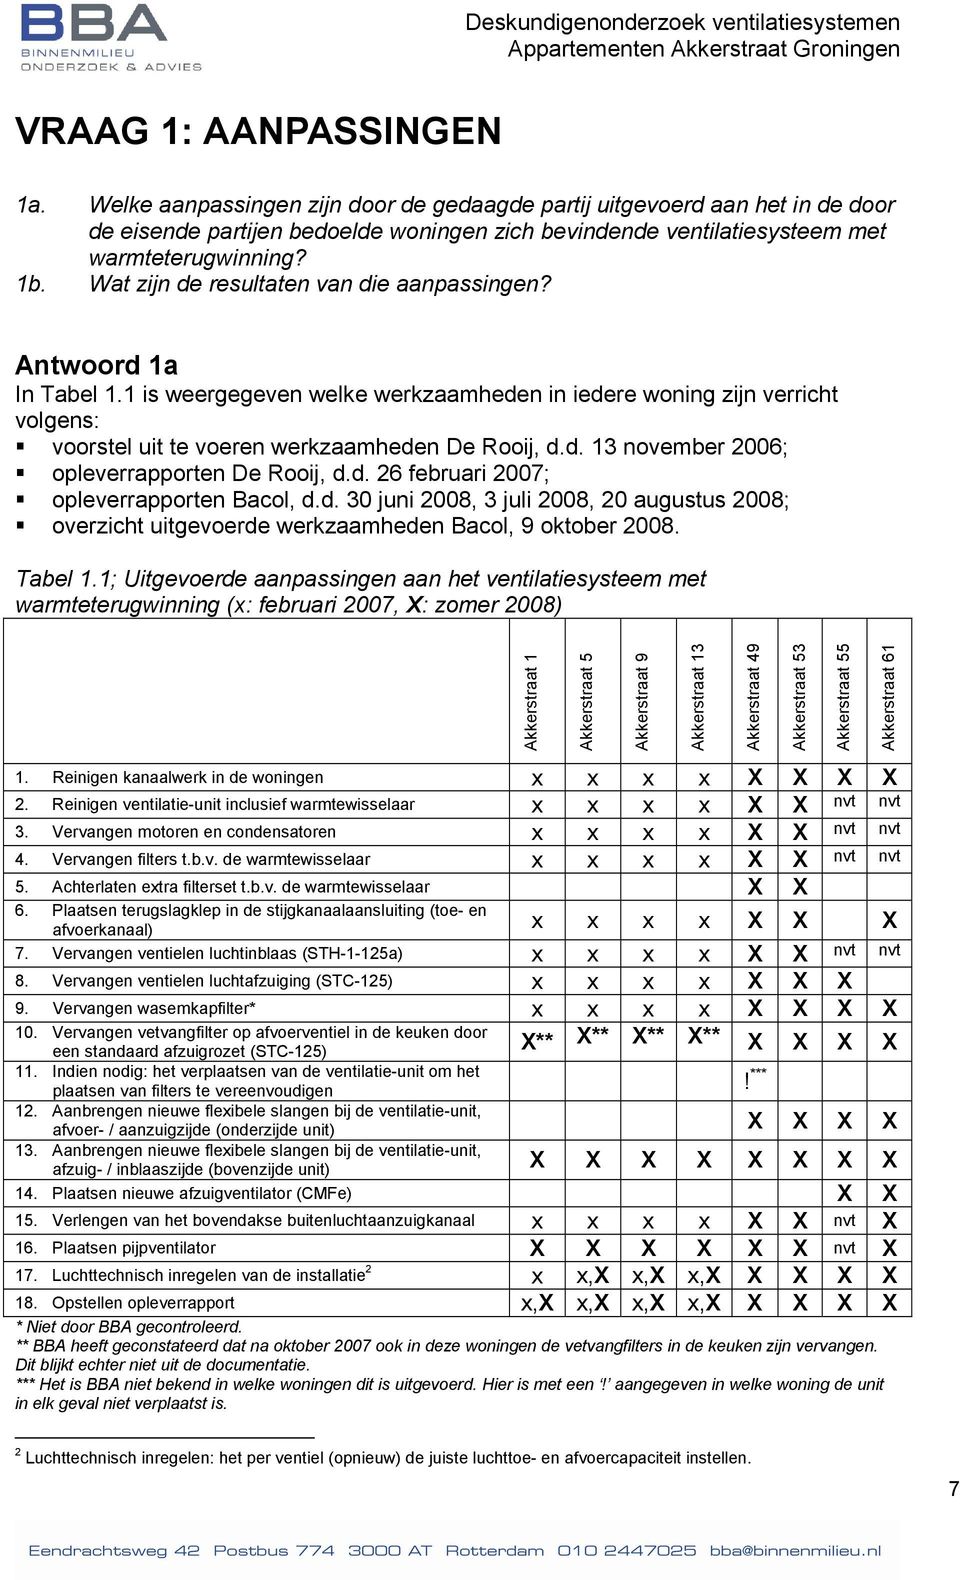 d. 26 februari 2007; opleverrapporten Bacol, d.d. 30 juni 2008, 3 juli 2008, 20 augustus 2008; overzicht uitgevoerde werkzaamheden Bacol, 9 oktober 2008. Tabel 1.